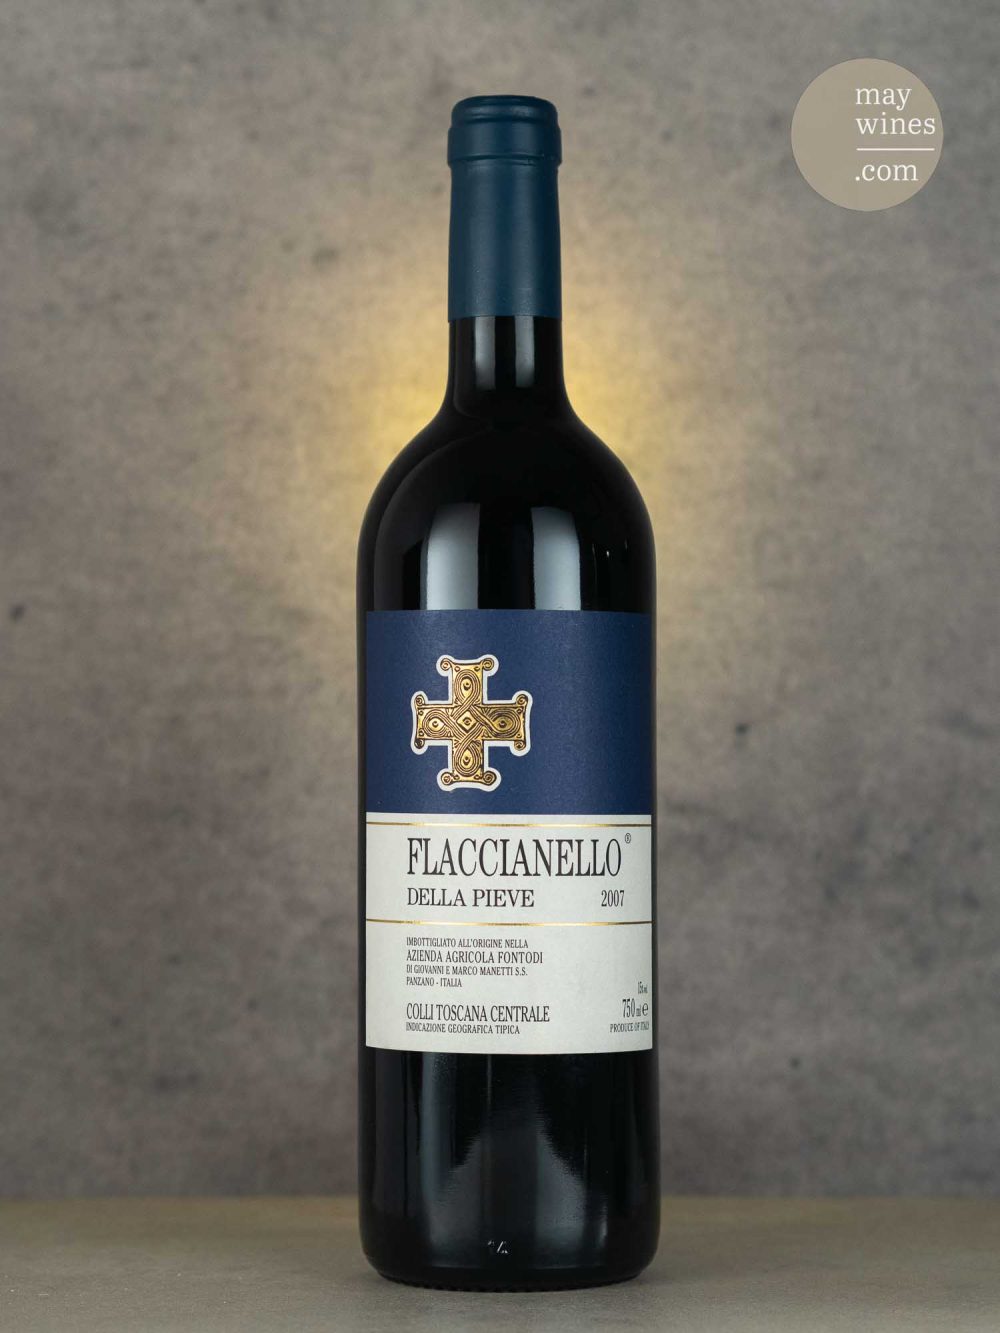 May Wines – Rotwein – 2007 Flaccianello della Pieve - Fontodi